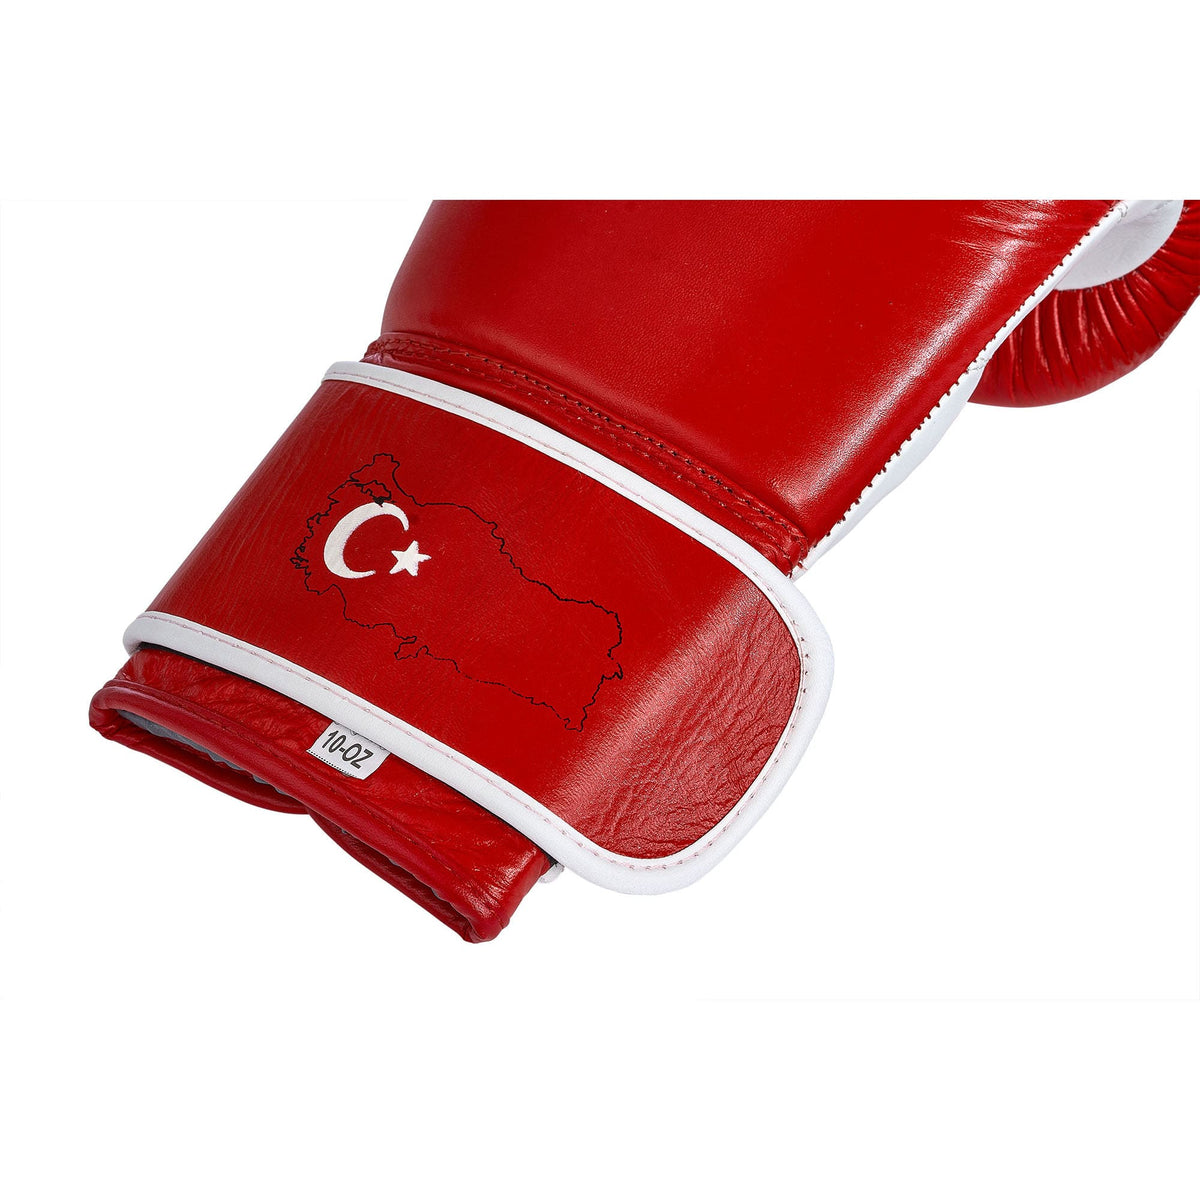 Nahaufnahme des Klettverschlusses am Handgelenk türkischer Boxhandschuhe, die den Umriss der Türkei und die türkische Flagge integriert zeigen. Diese Detailaufnahme hebt das einzigartige Design hervor, das die Handschuhe ziert, und unterstreicht gleichzeitig die Qualität und Funktionalität. Aus robustem Leder gefertigt, gewährleisten die Handschuhe Langlebigkeit und bieten Boxern aller Niveaus optimalen Schutz.